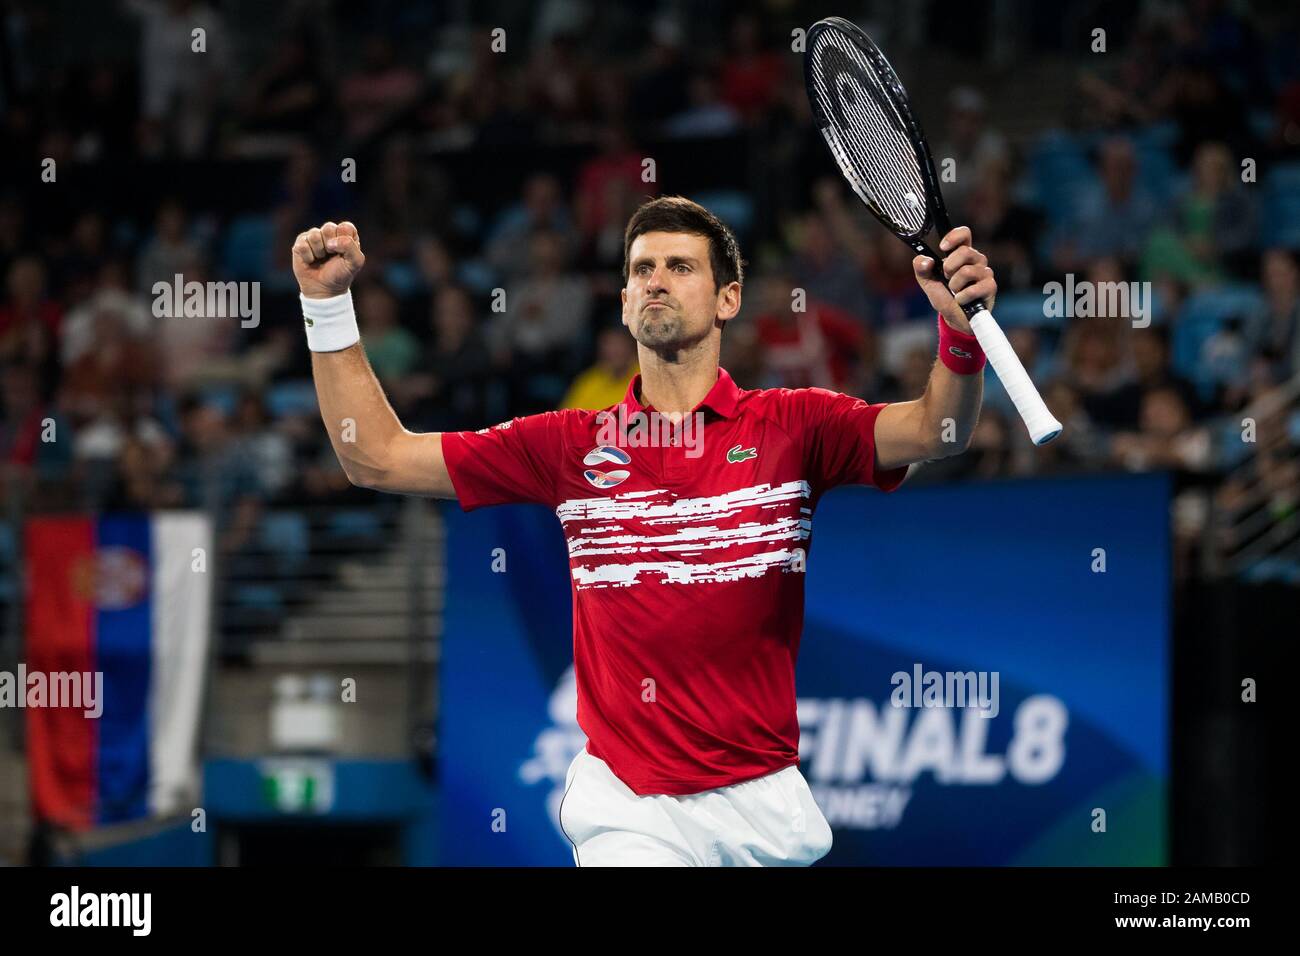 Novak Djokovic, de Serbie, célèbre avoir battu l'Espagne 2-1 lors de la finale de la coupe ATP 2020 à la Ken Rosewall Arena, Sydney, Australie, le 12 janvier 2020. Photo De Peter Dovgan. Banque D'Images